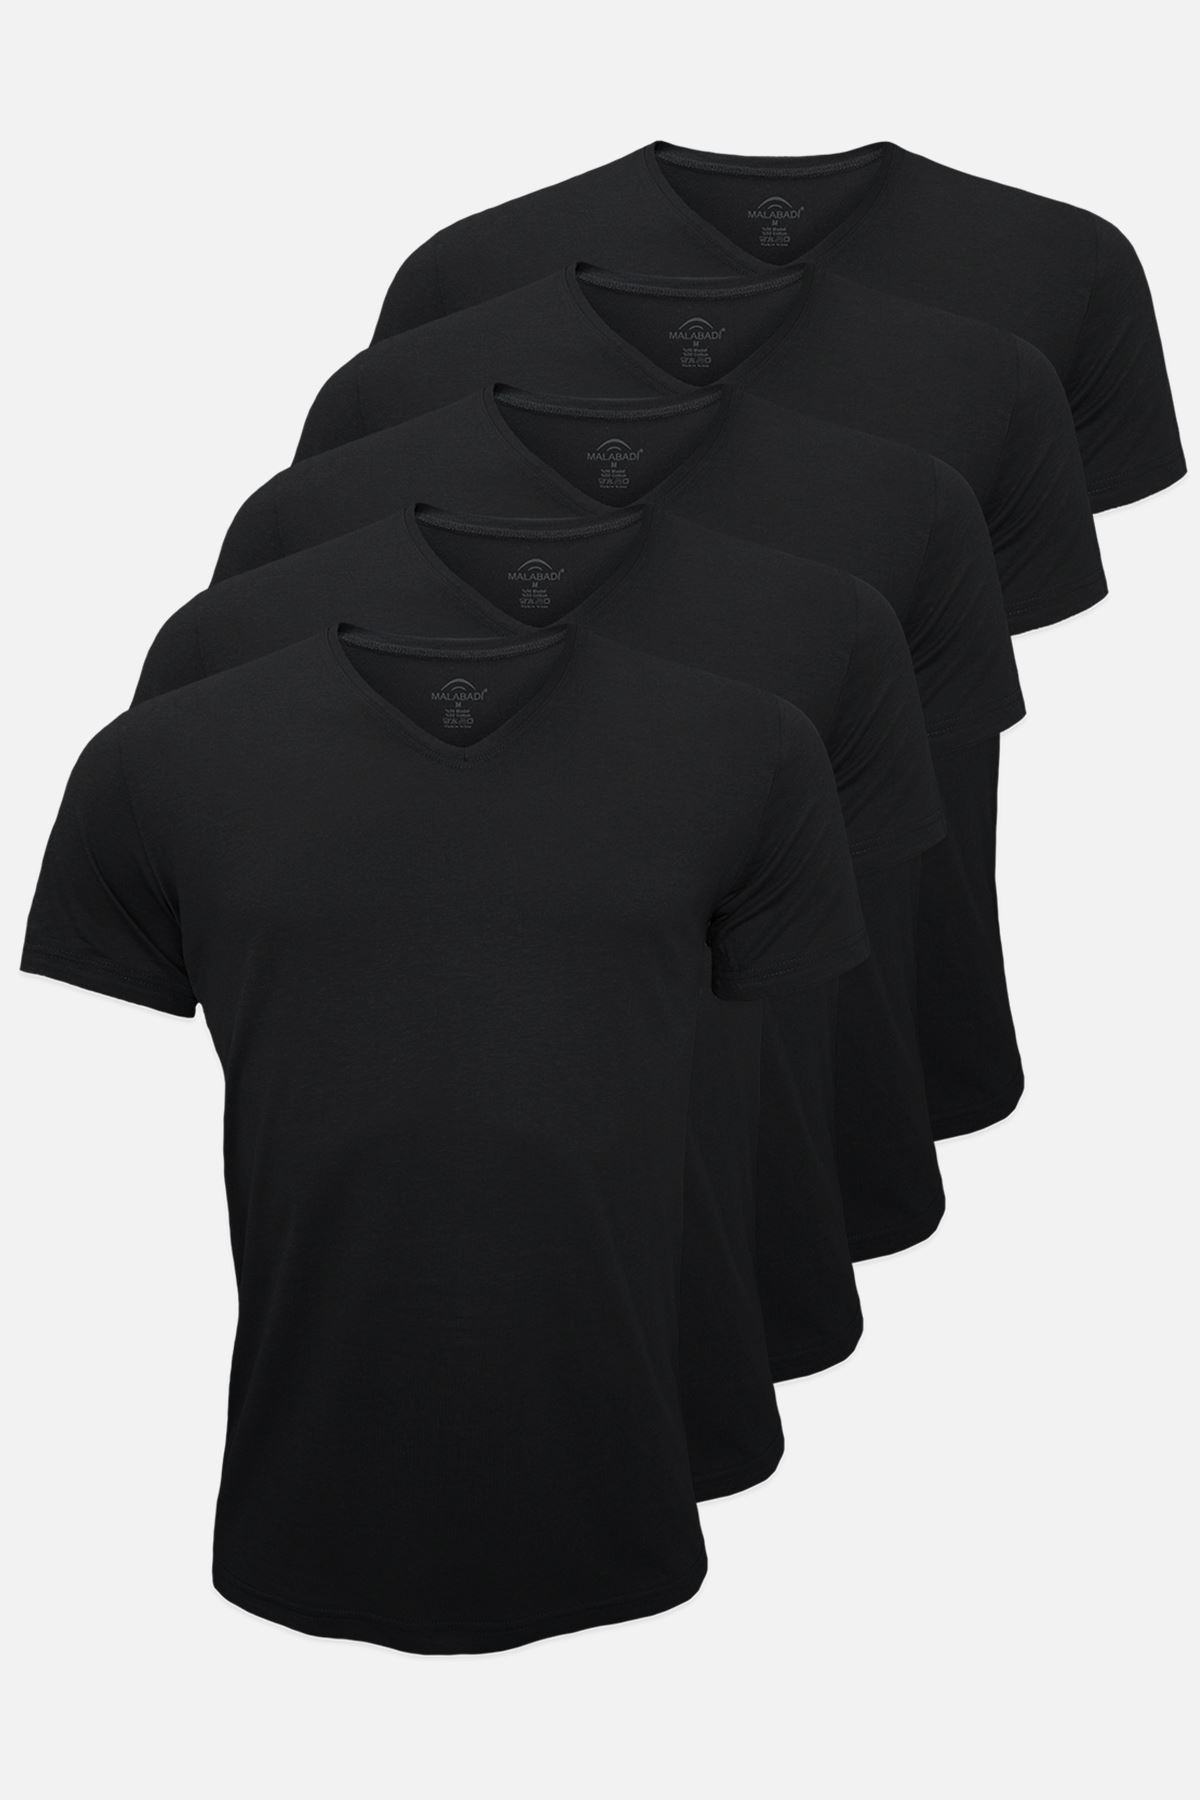 Erkek Siyah 5 Li Paket Basic V Yaka İnce Modal Yaz Serinliği Tshirt 5M085